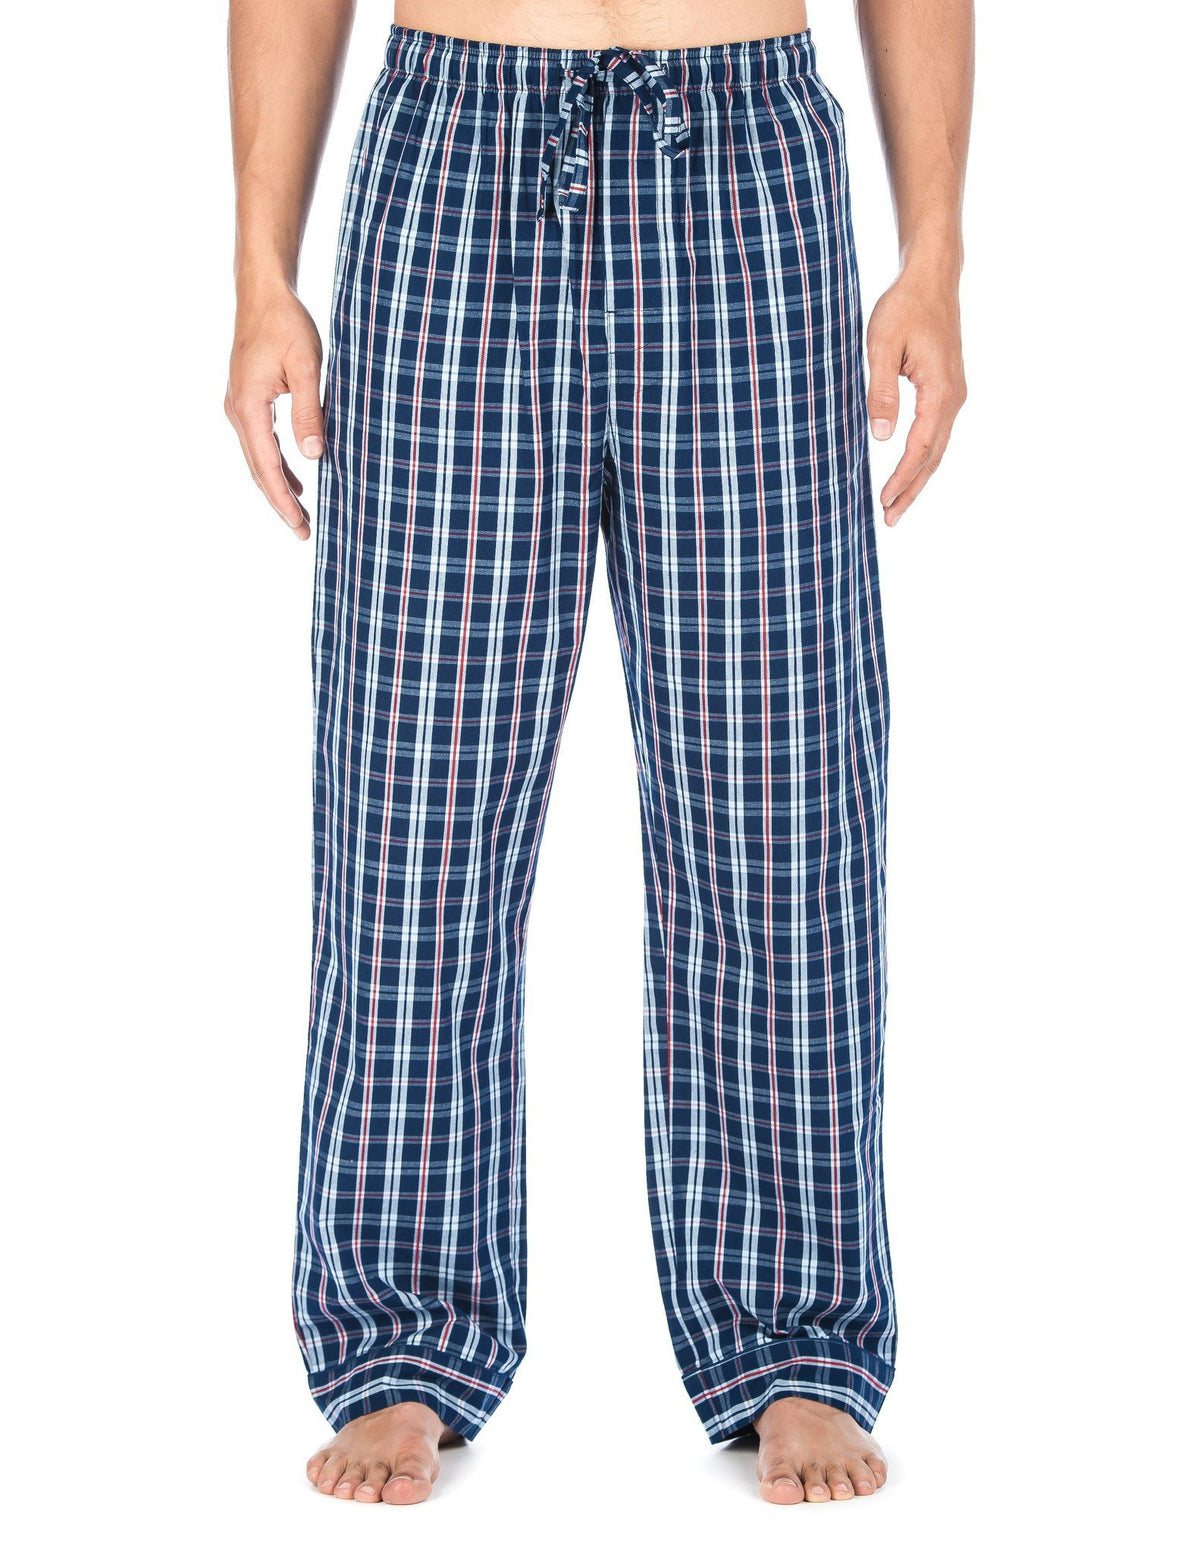 Men's 100% Cotton Comfort-Fit Sleep/Lounge Pants - University Plaid Navy